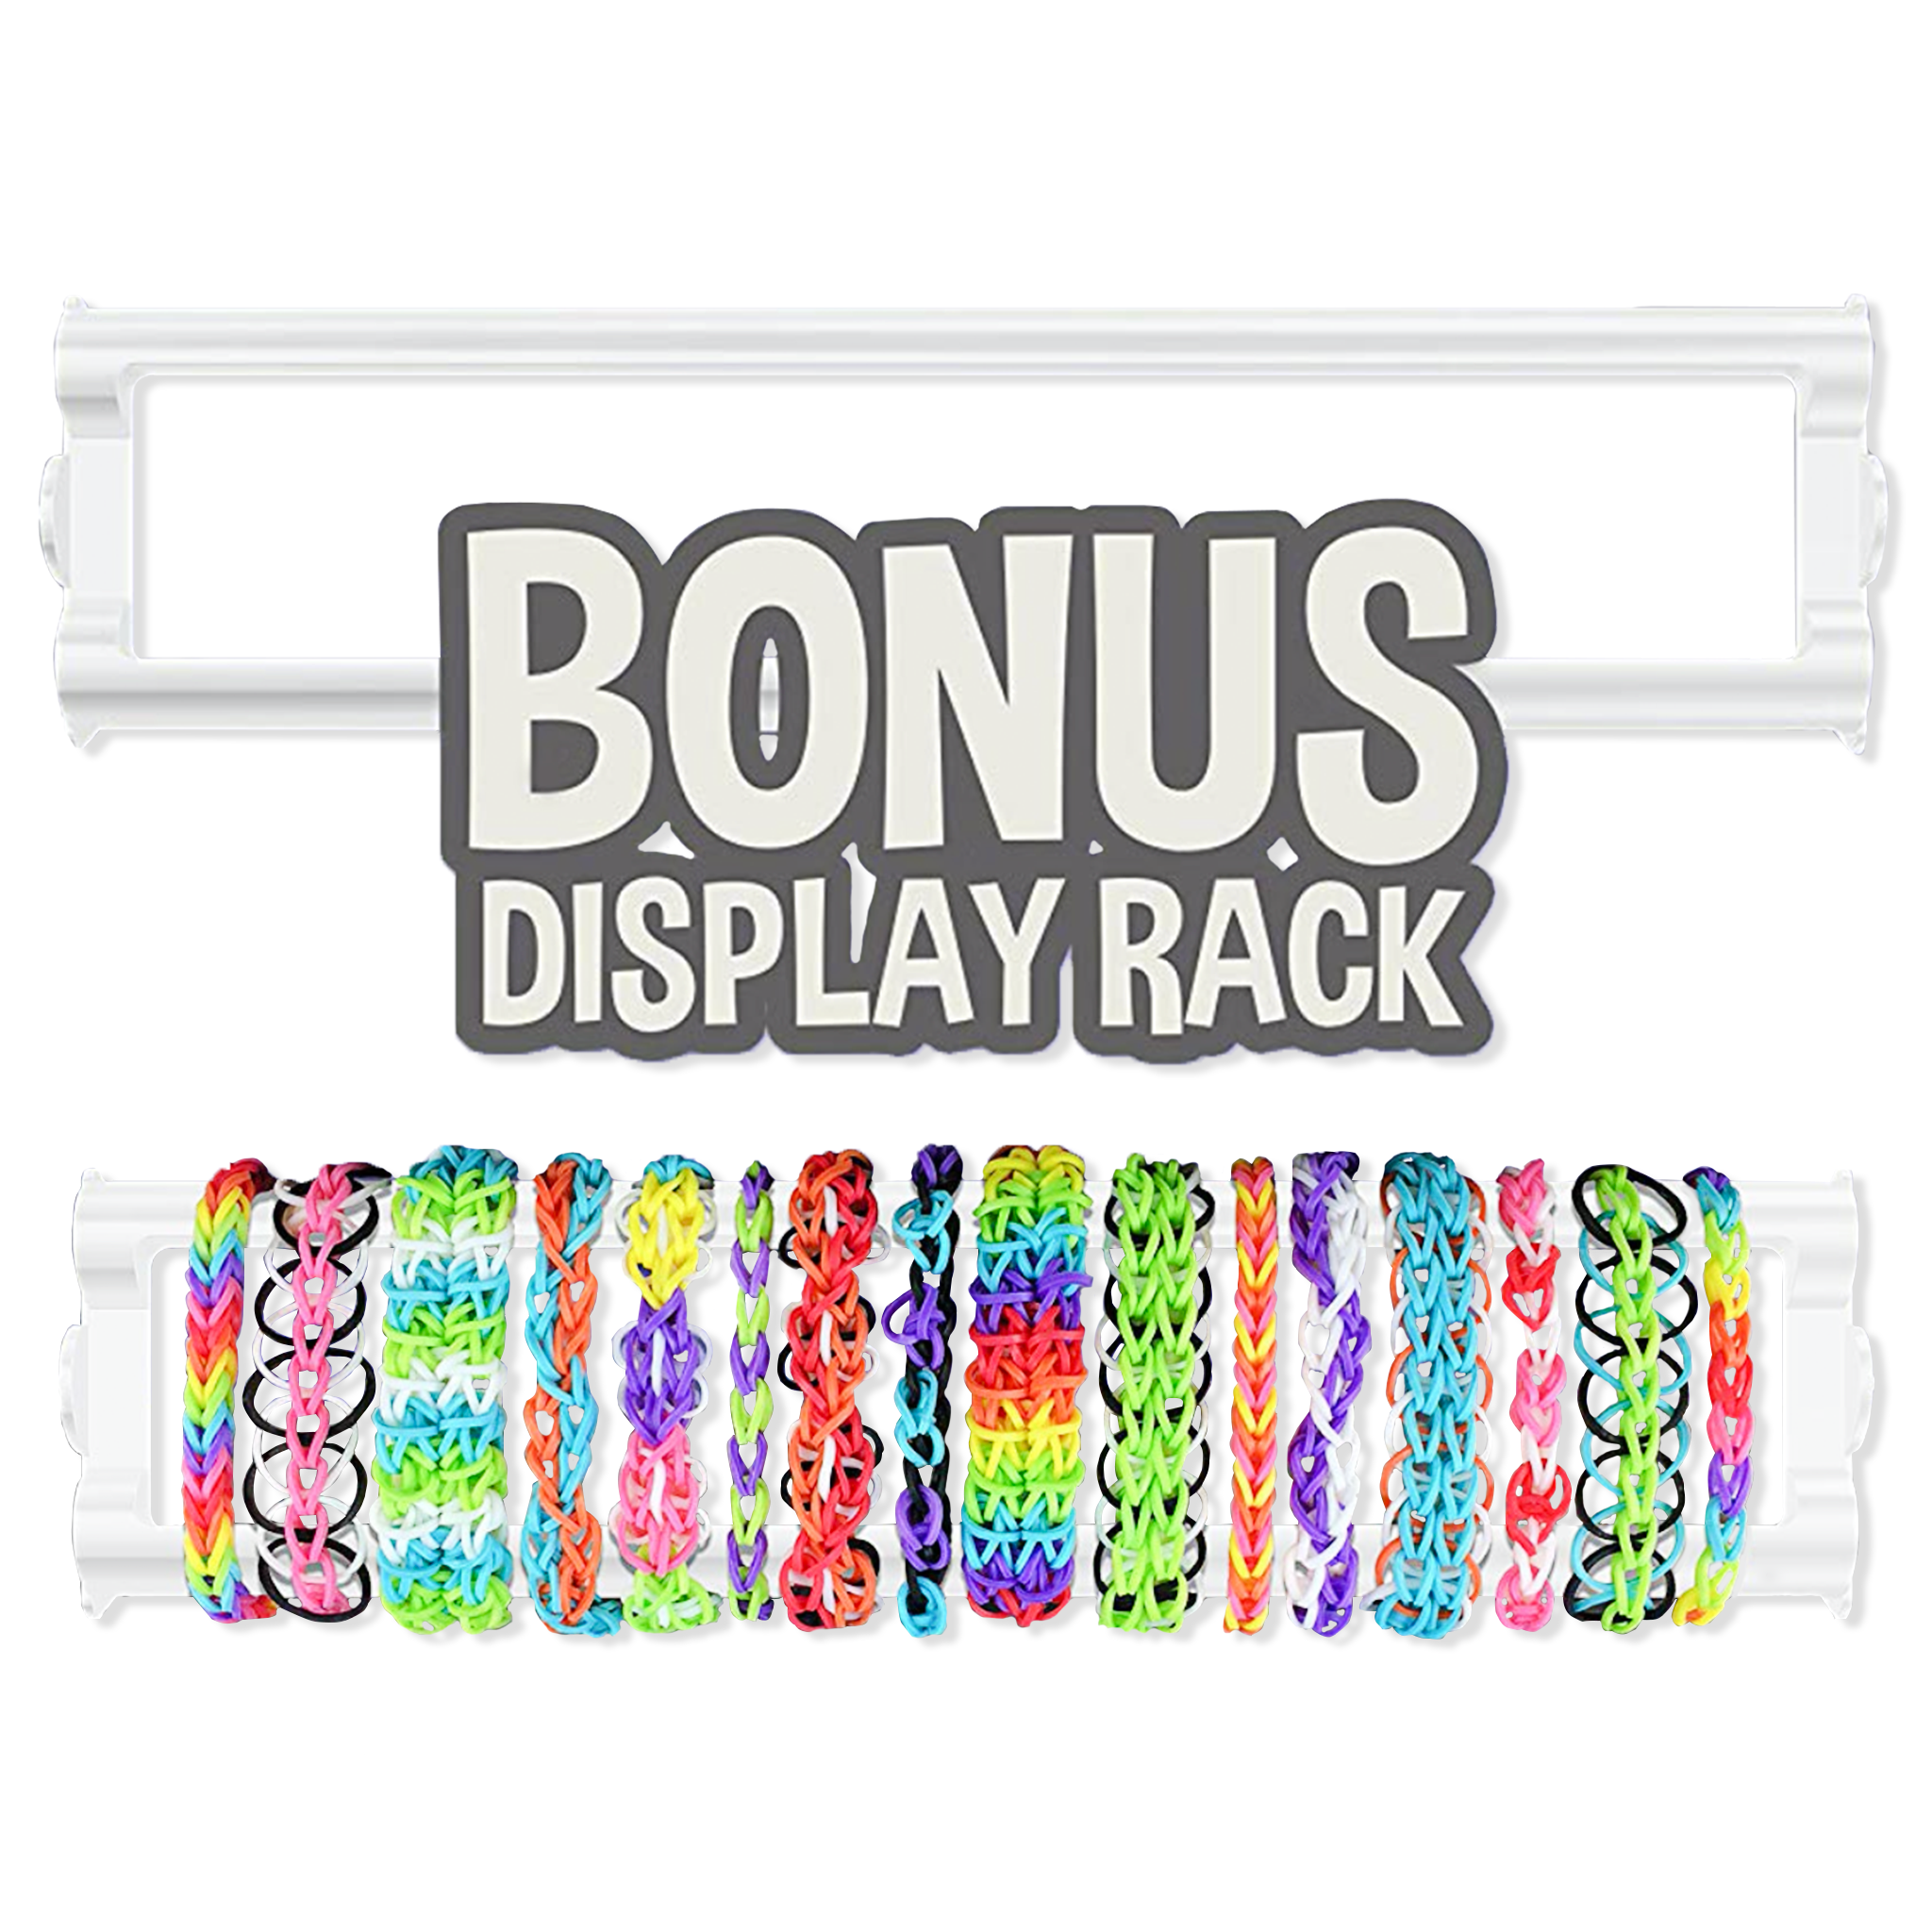 15/18/32/36 Grids Colorful Loom Bands Set Candy Color Bracelet Making Kit  DIY Rubber Band Woven Bracelet Kit Girls Craft Toys Gifts